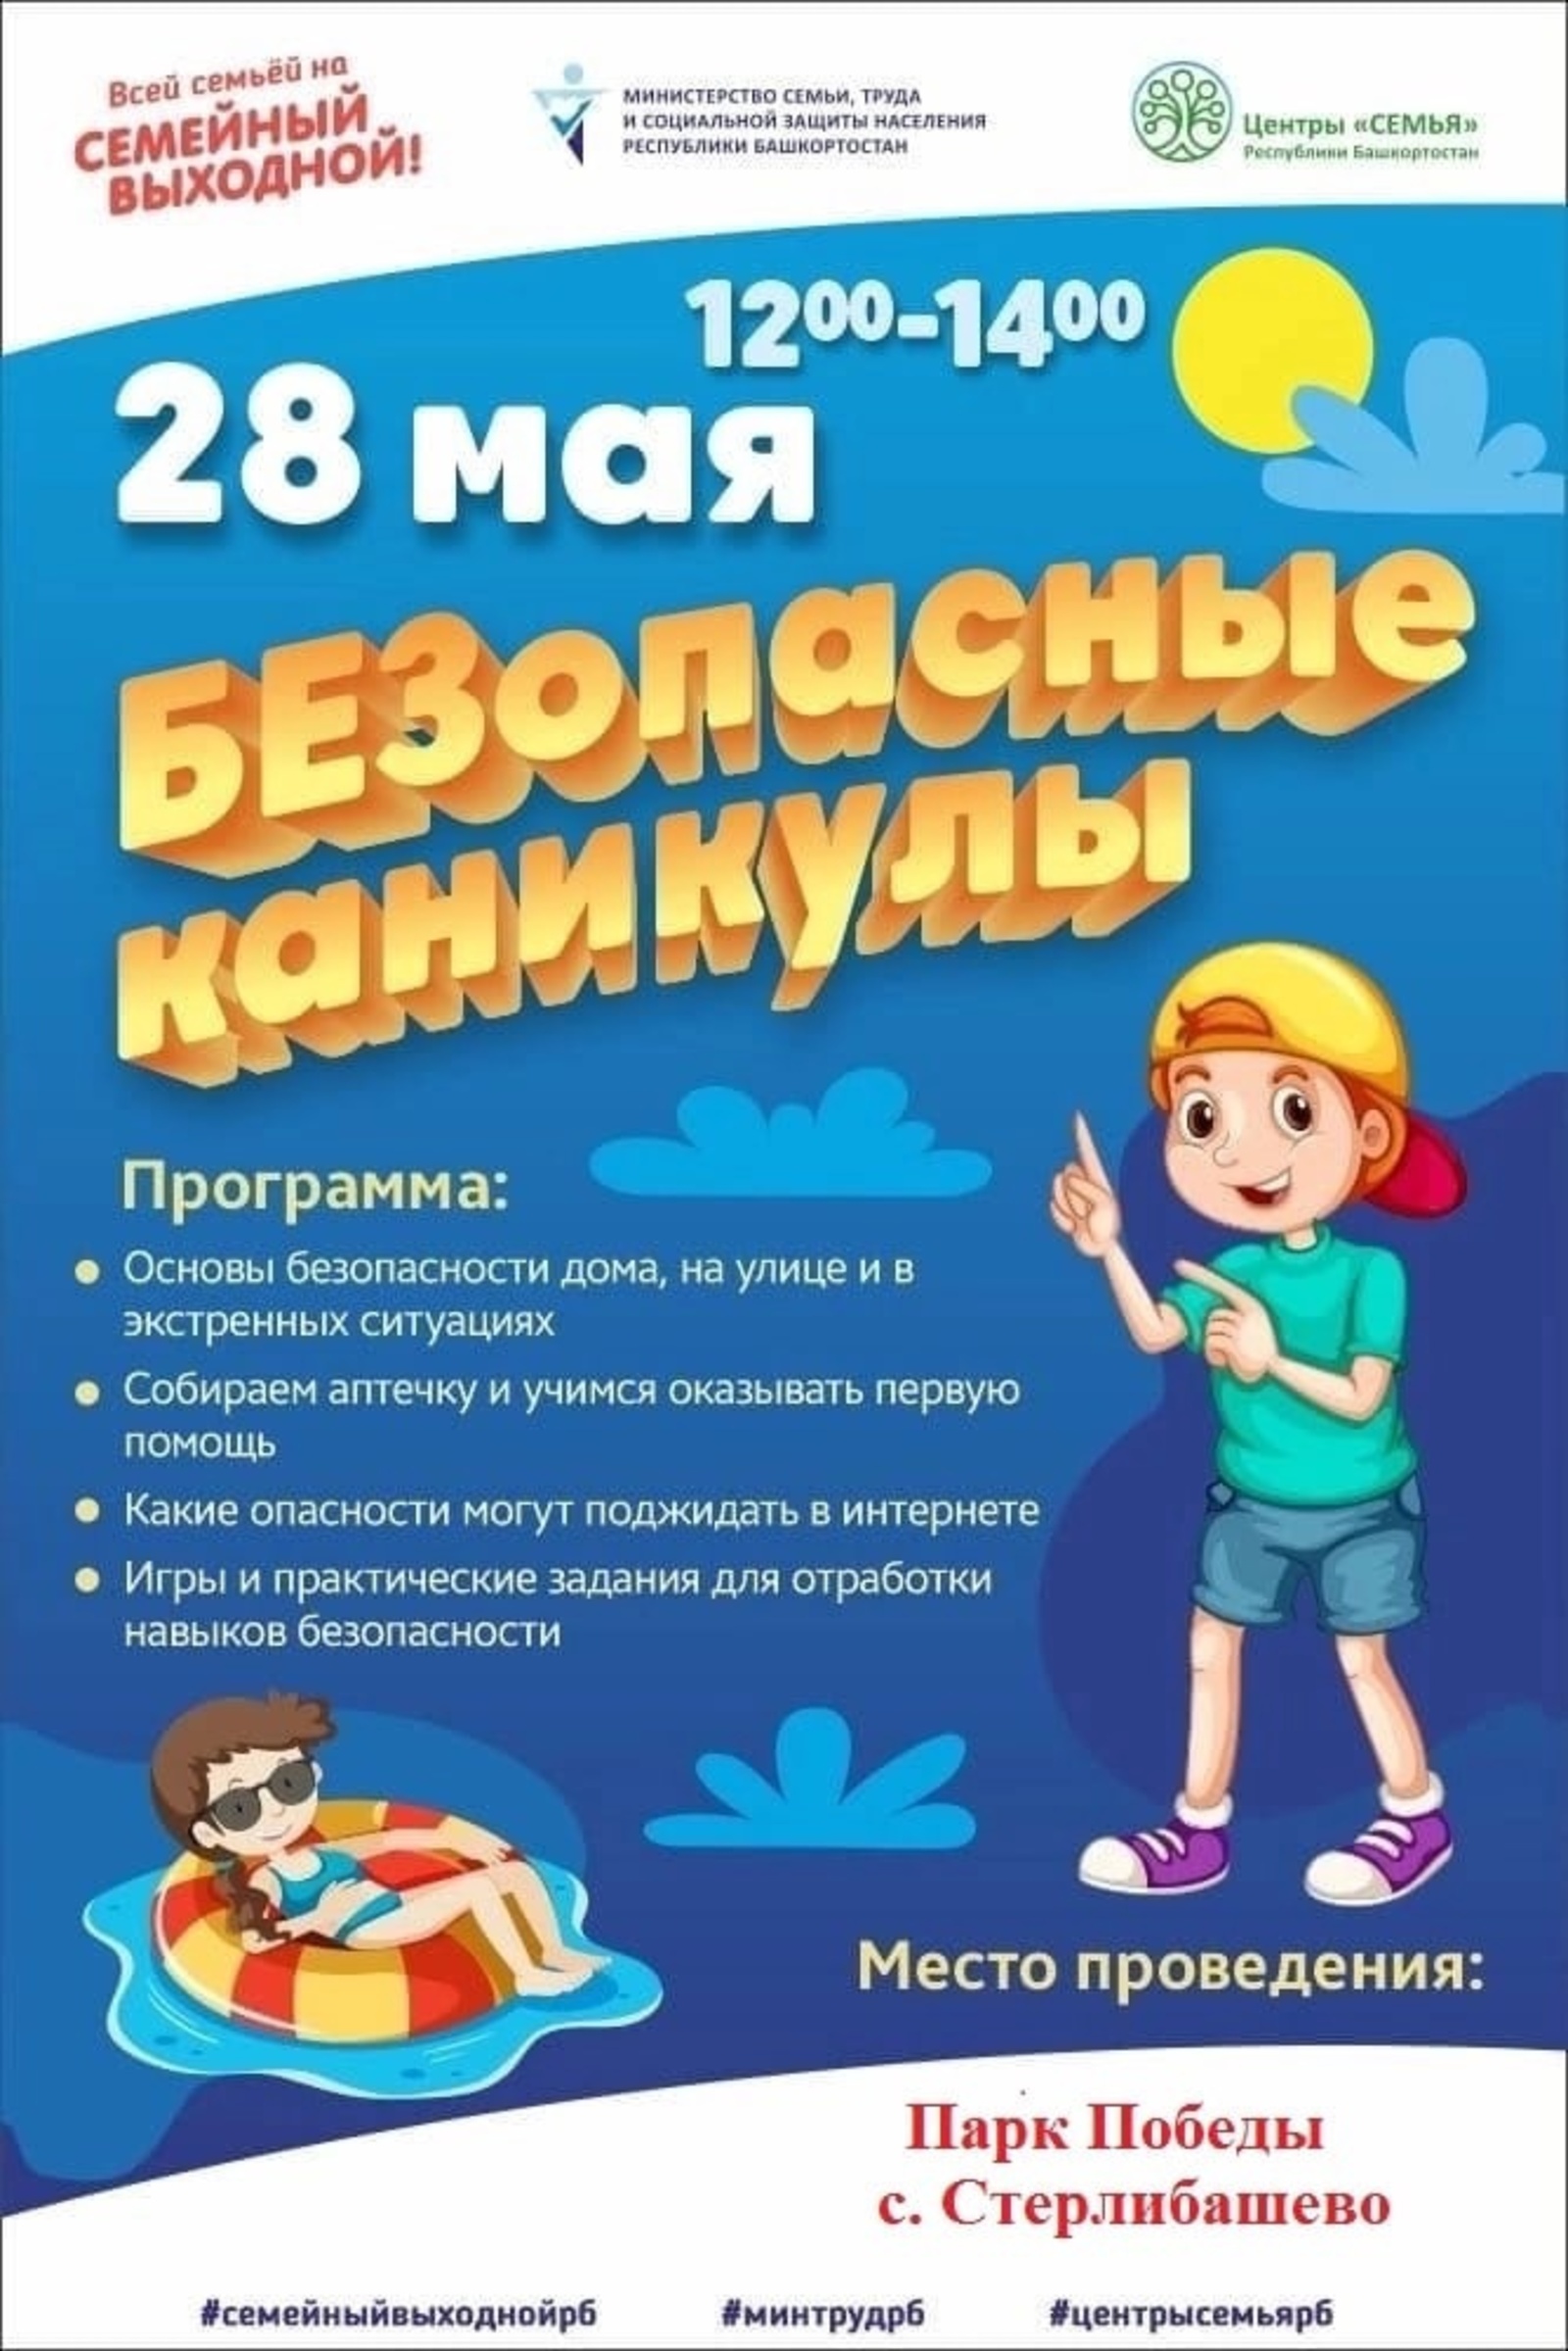 Приглашаем всех присоединится к Семейному выходному «БЕЗопасные каникулы», который пройдёт 28 мая в Парке Победы с.Стерлибашево